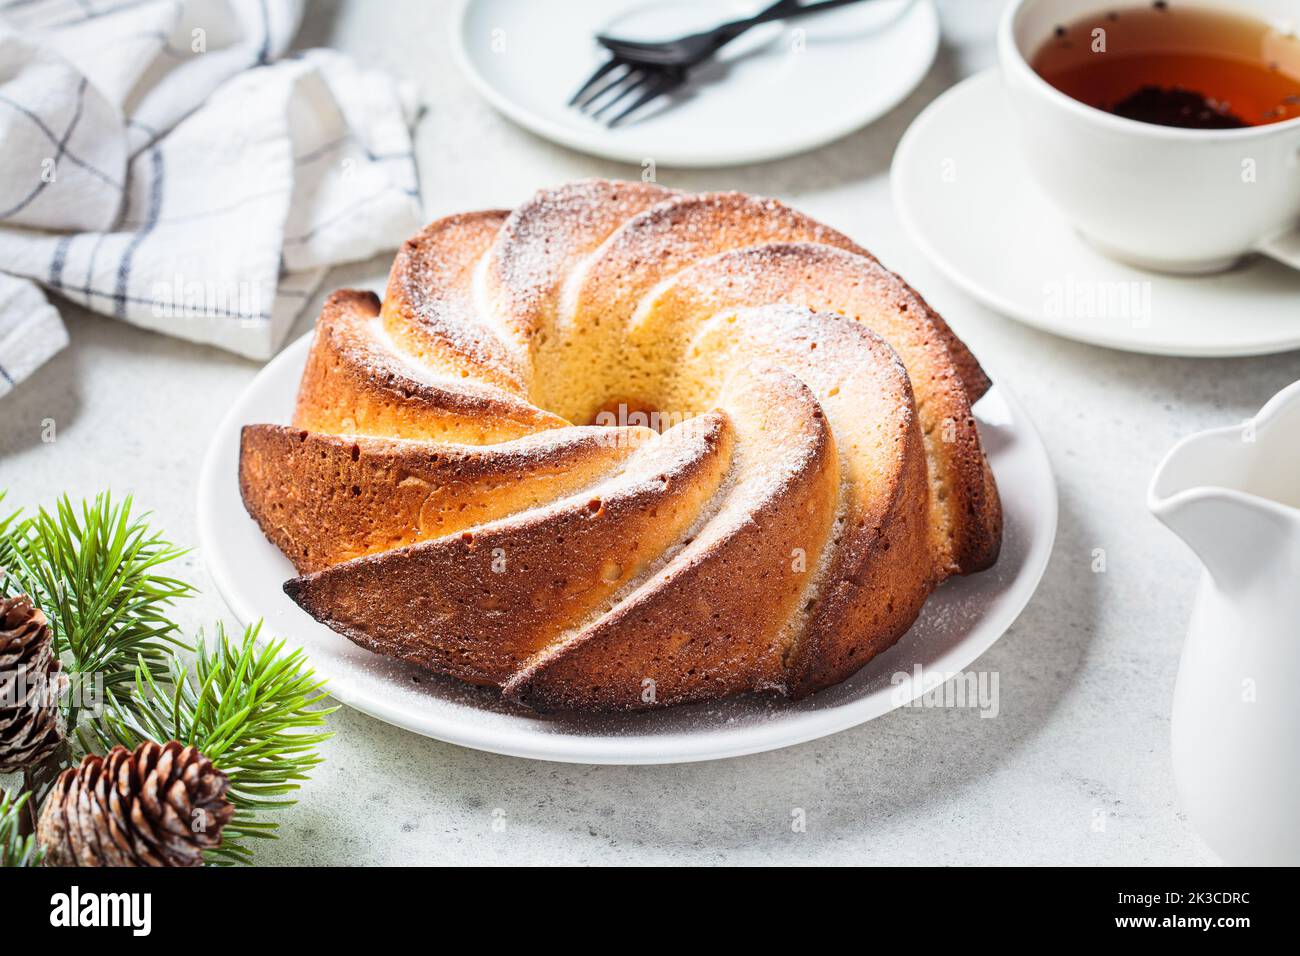 Weihnachtsdessert. Vanillekuchen mit Puderzucker auf einem weißen Teller, hellgrauer Hintergrund mit Christbaumzweigen. Stockfoto